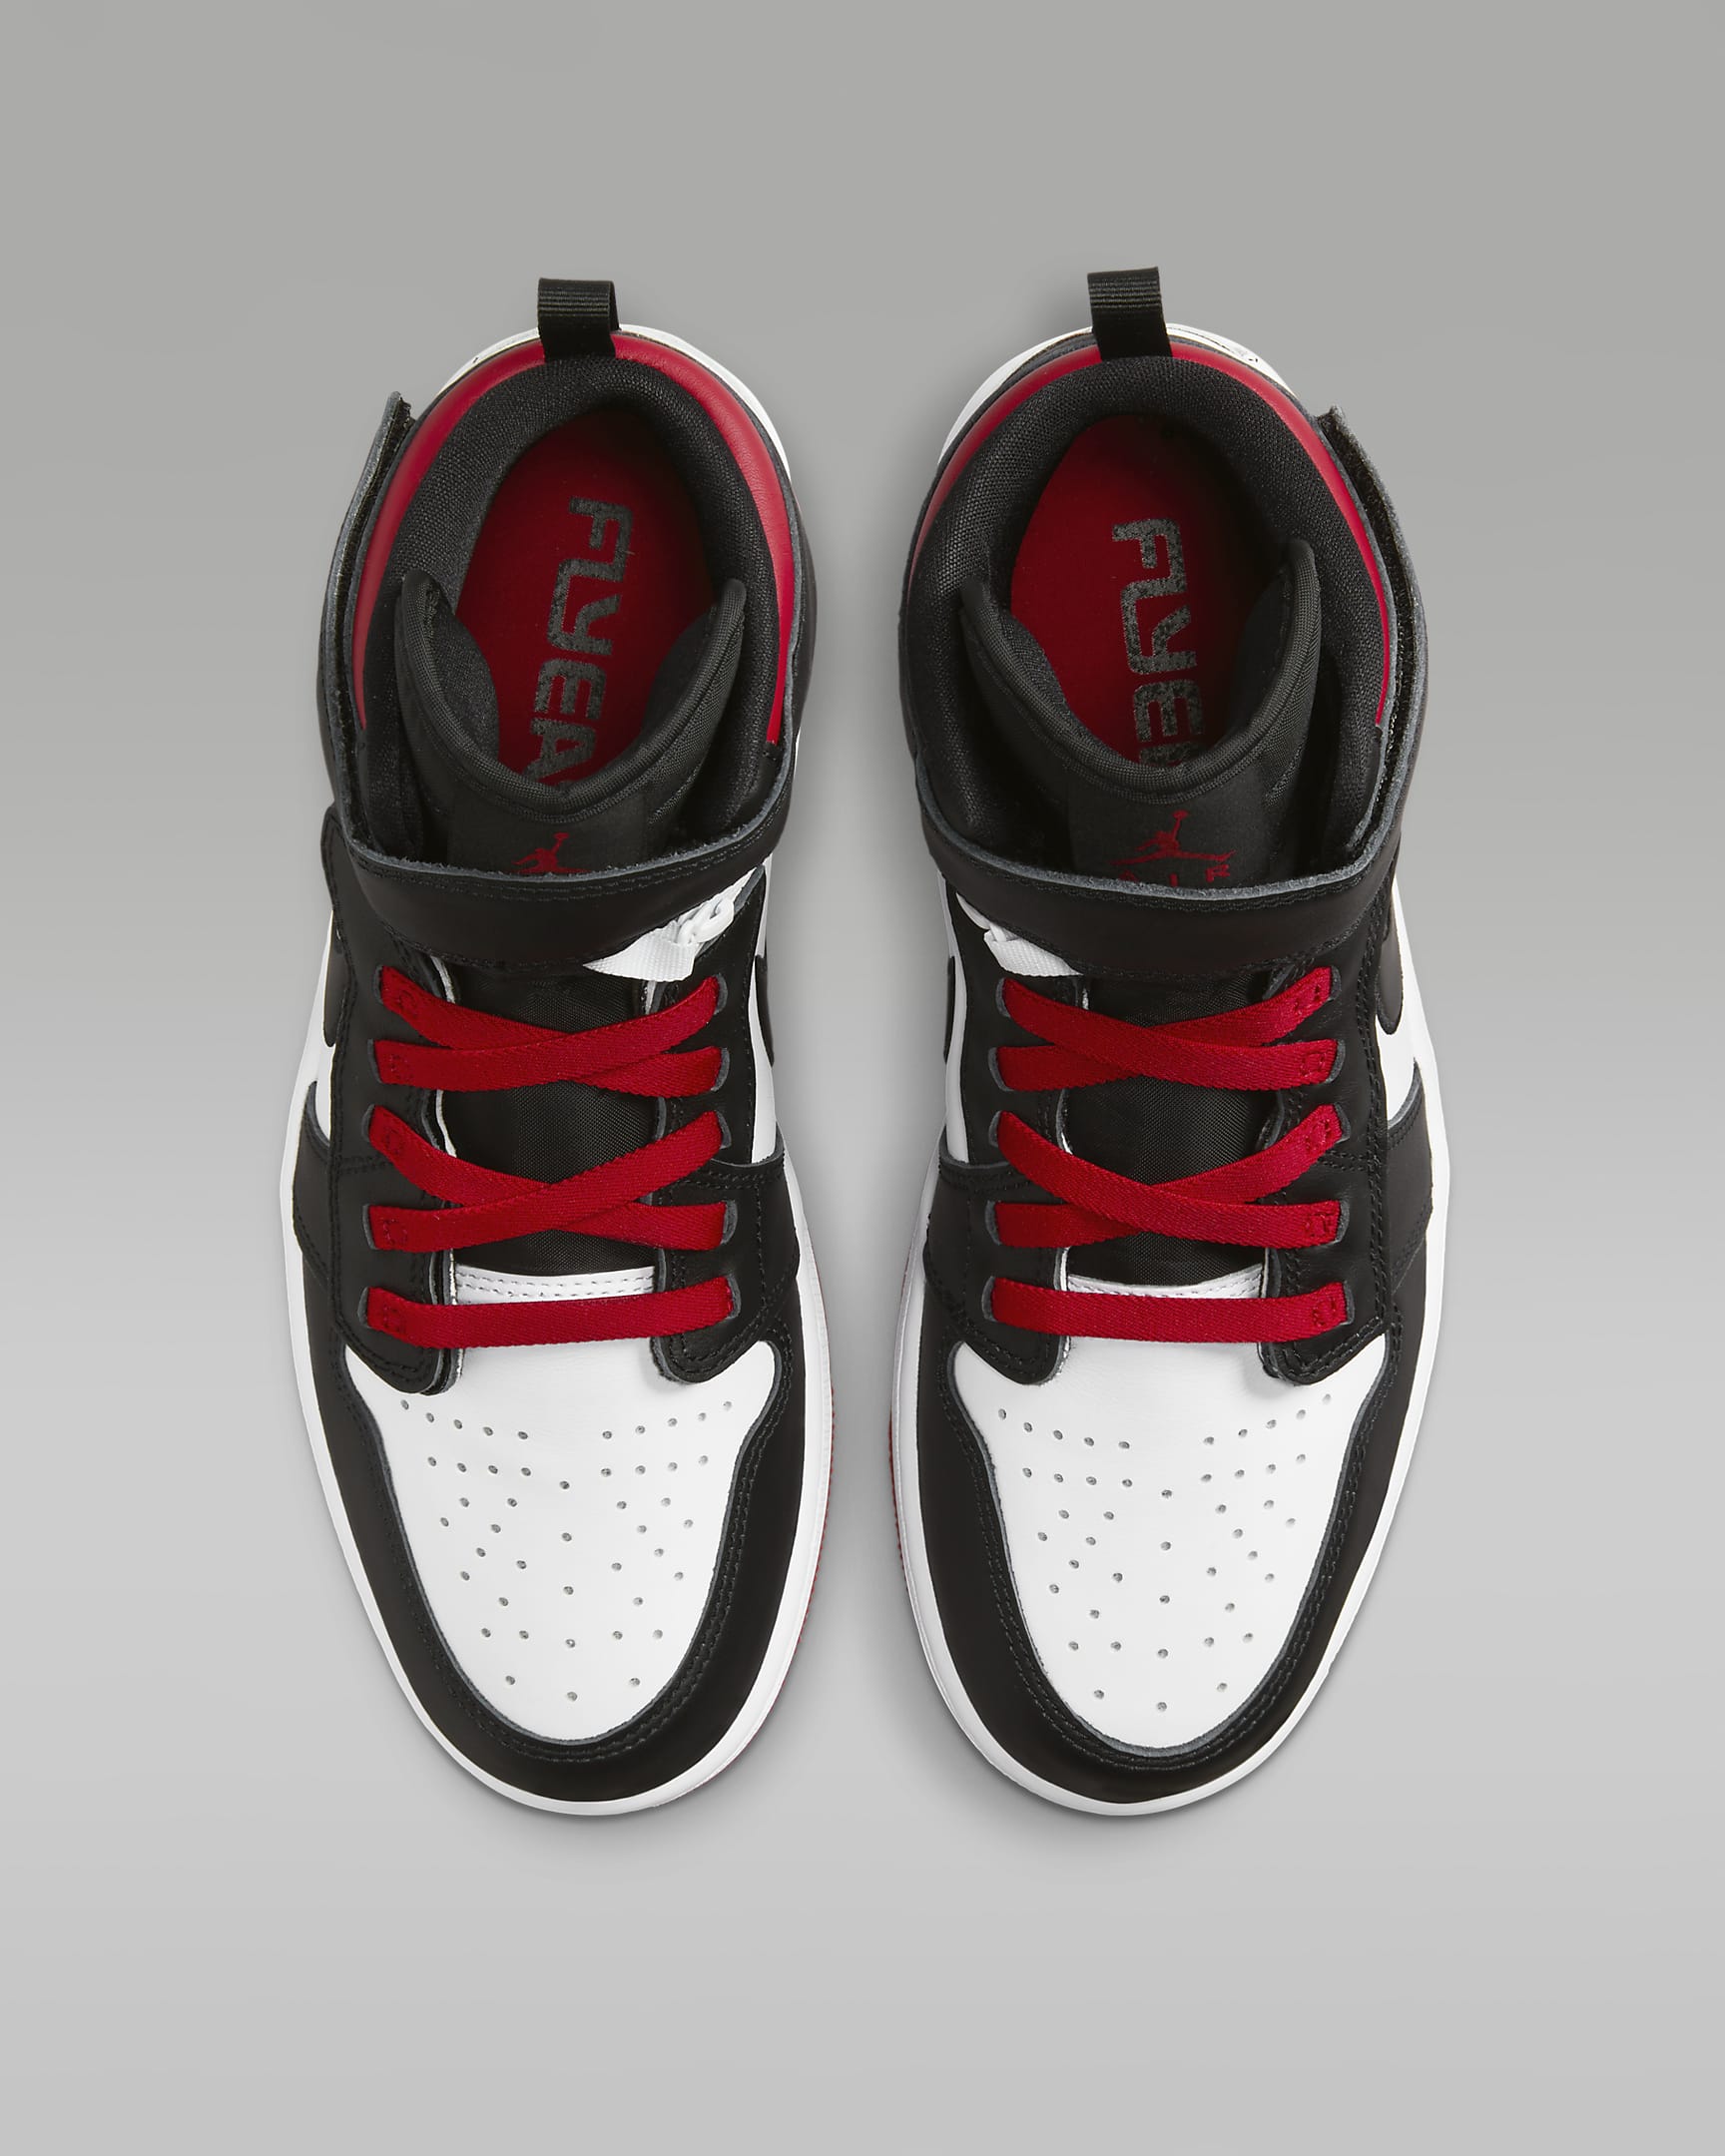 Unbelievable Comfort? Air Jordan 1 Hi FlyEase Men’s Shoes Review!